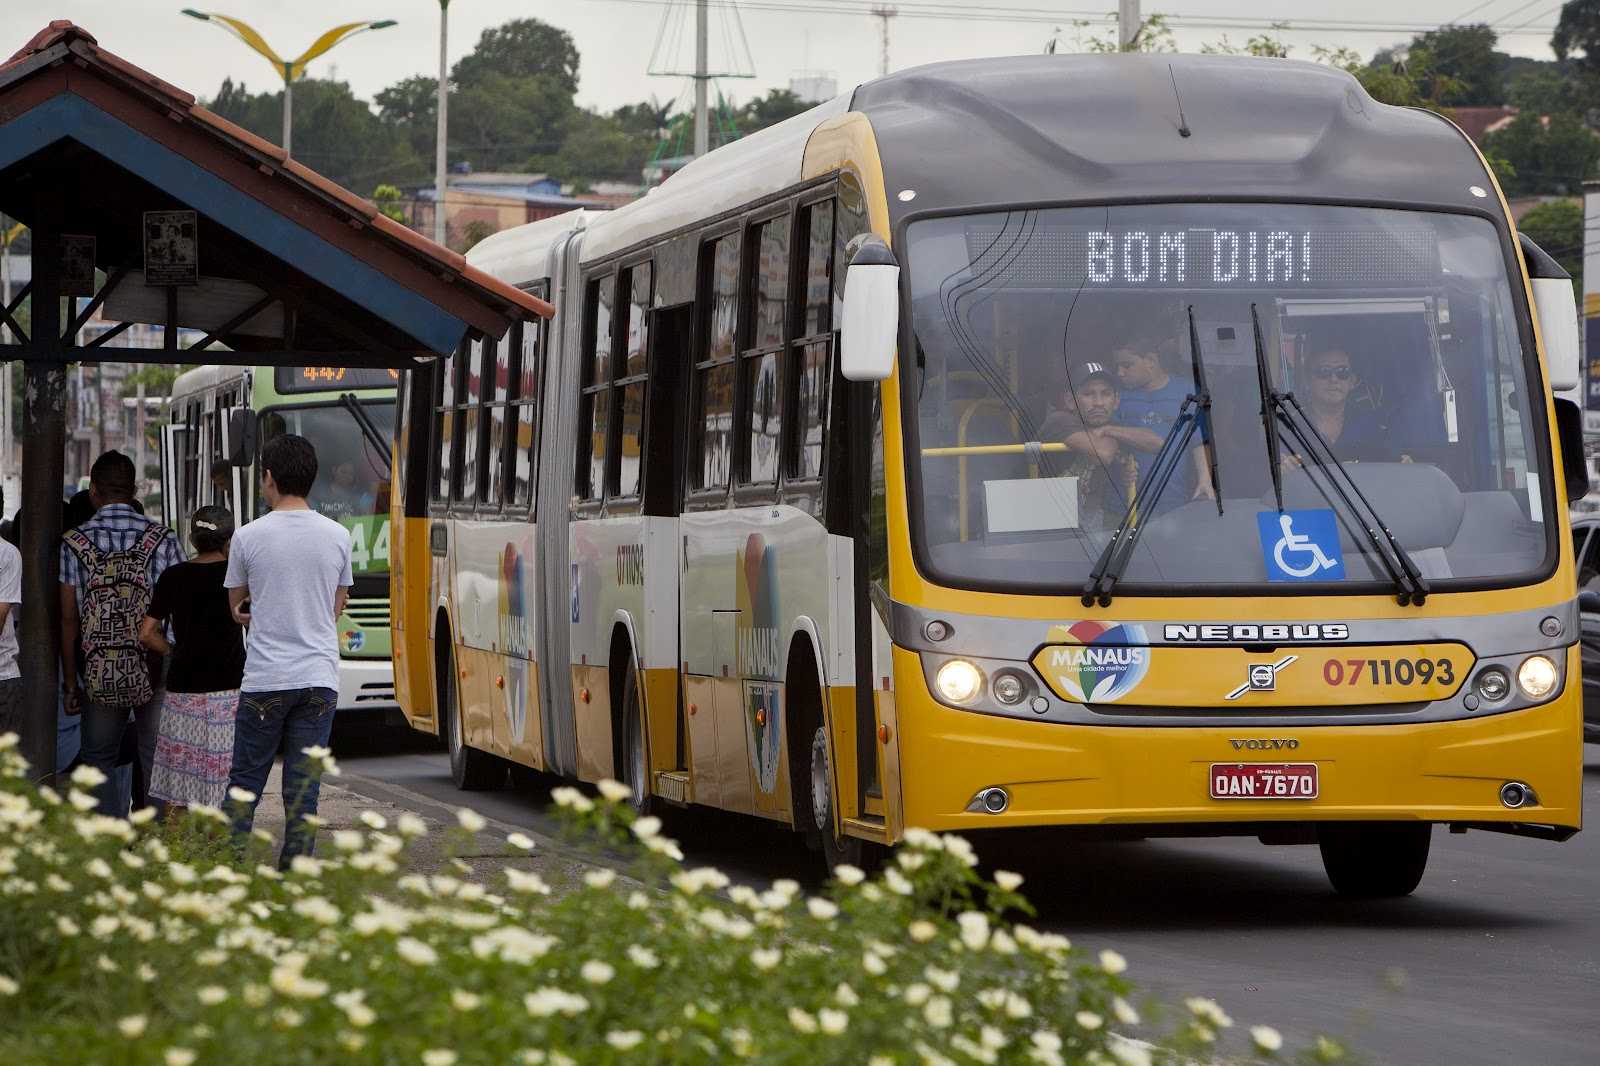 Governador pretende isentar ICMS do transporte coletivo de Manaus visando redução de tarifa - Imagem de divulgação